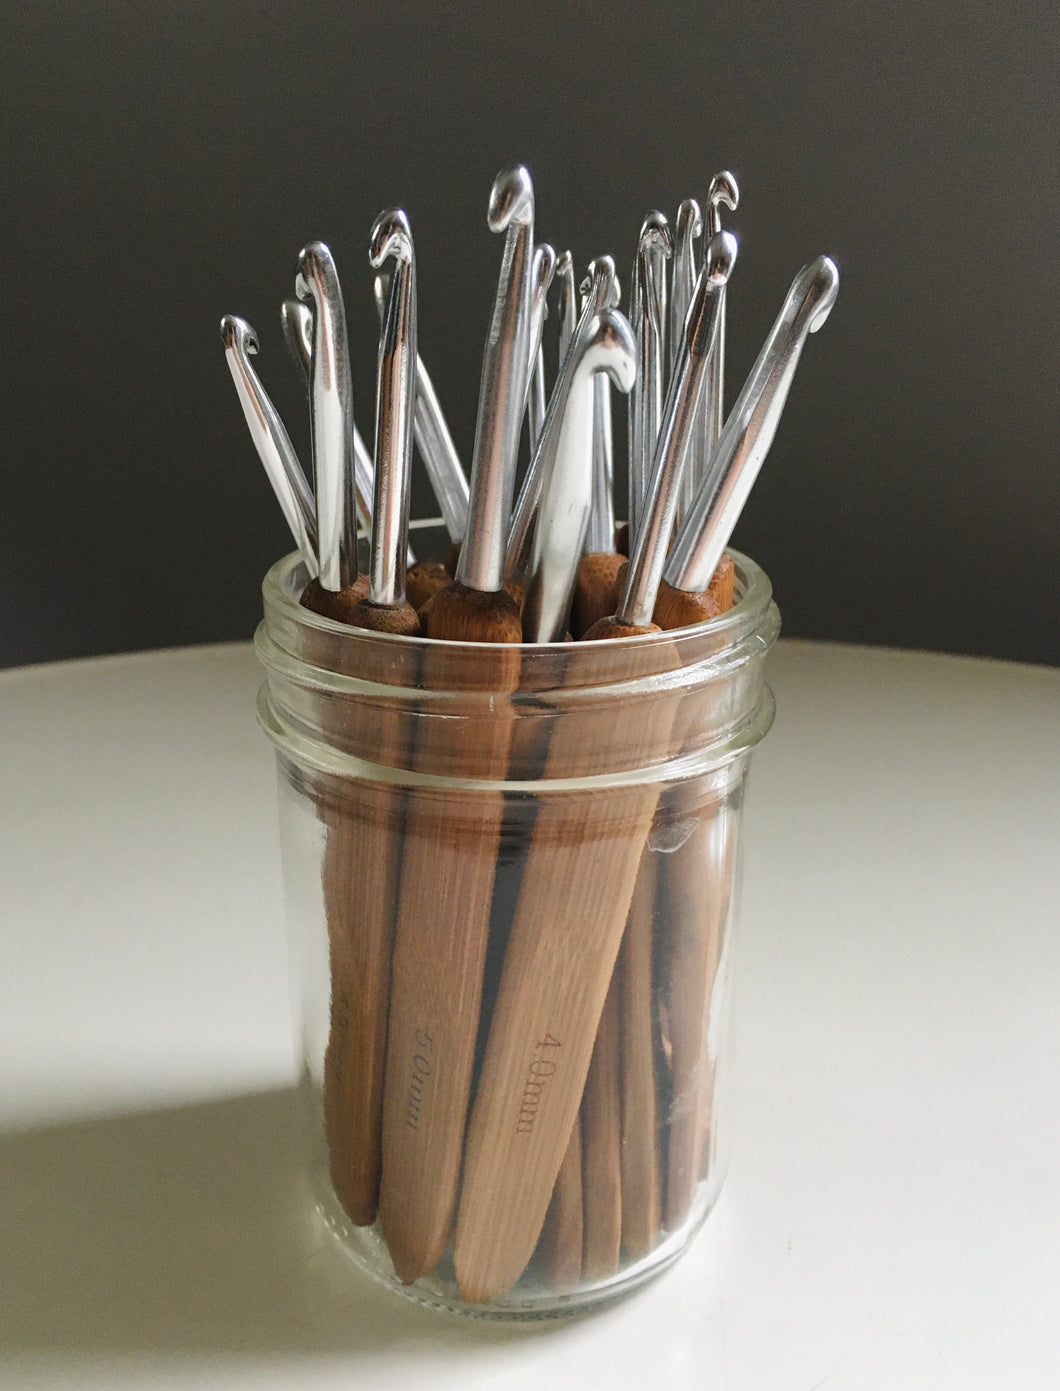 Bamboo Crocket Needles at Slow Maker Contemporary Toronto